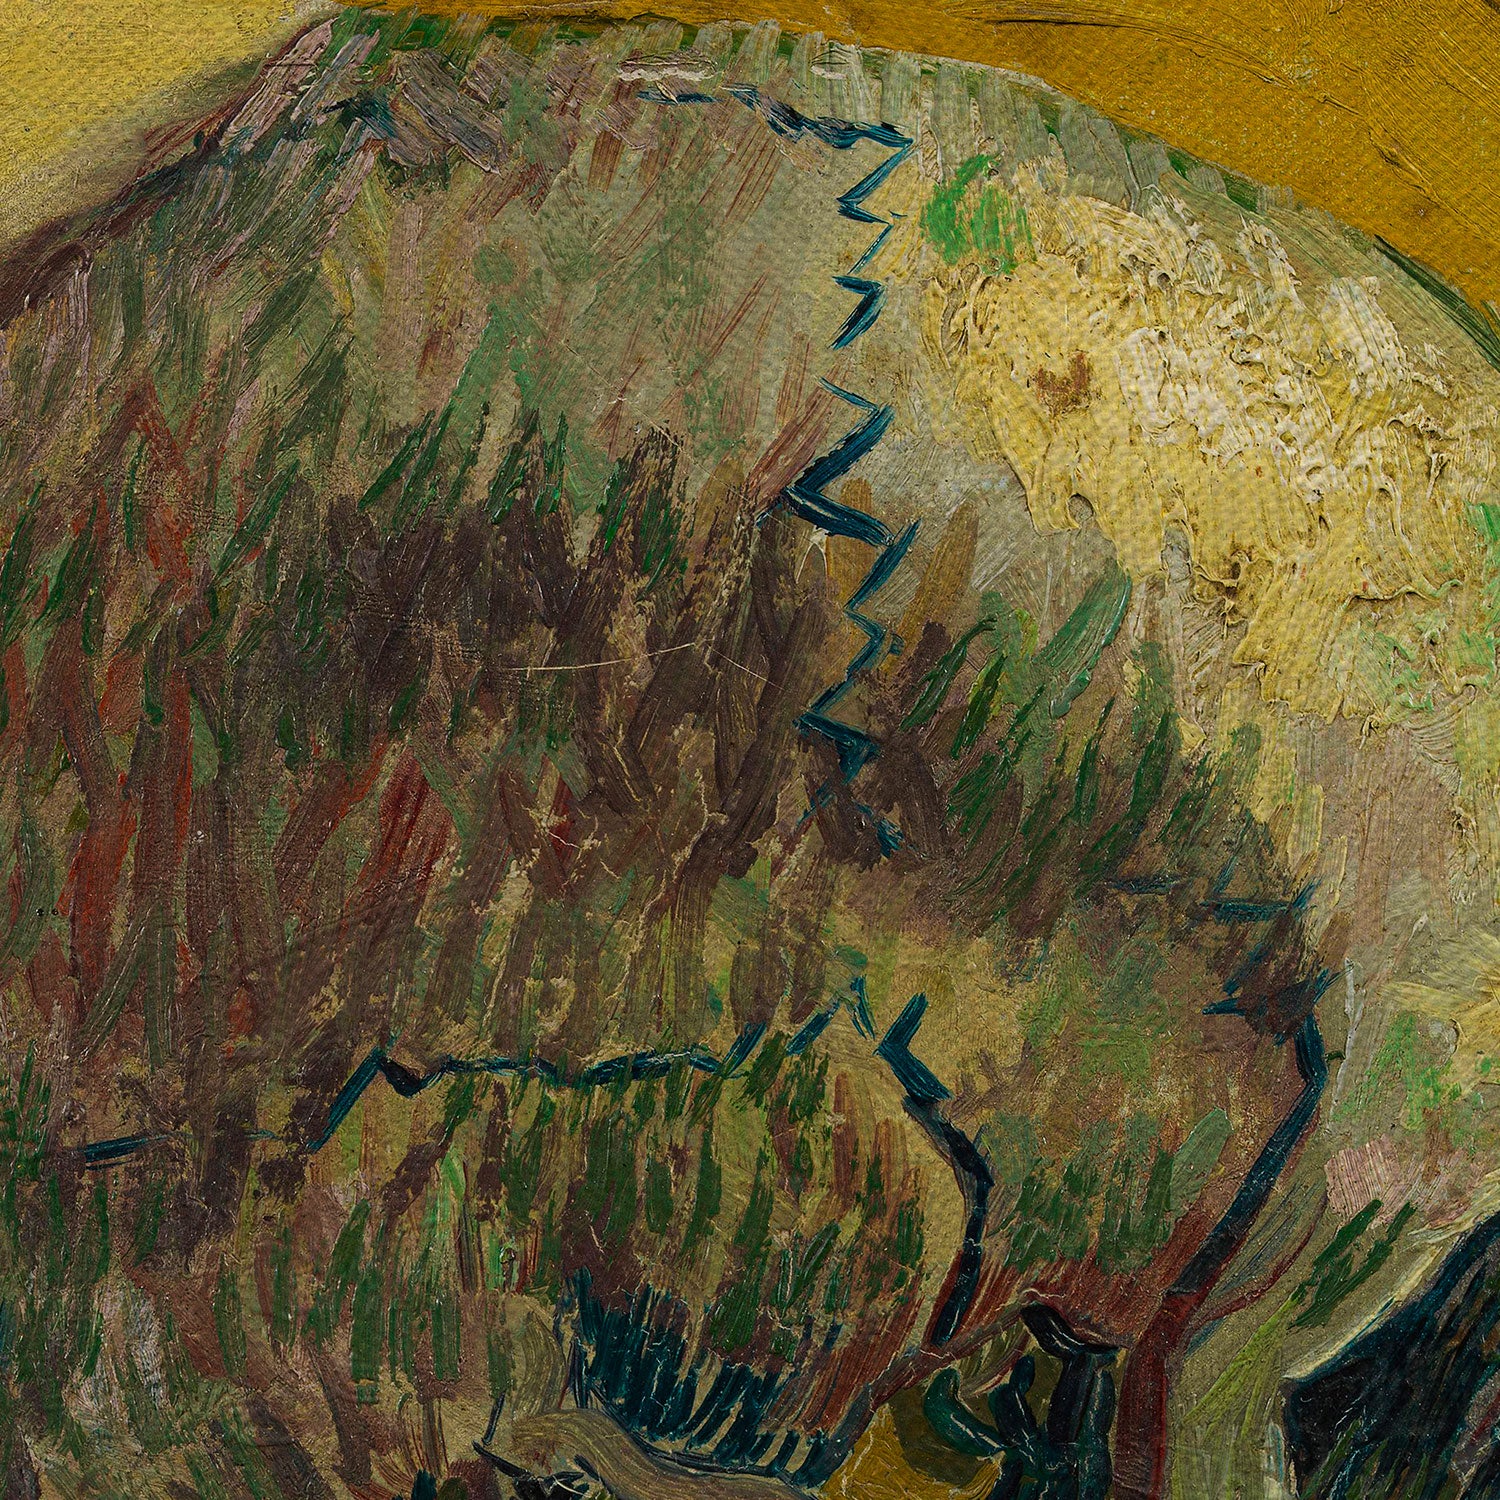 Vincent van Gogh Skull Canvas Wall Art